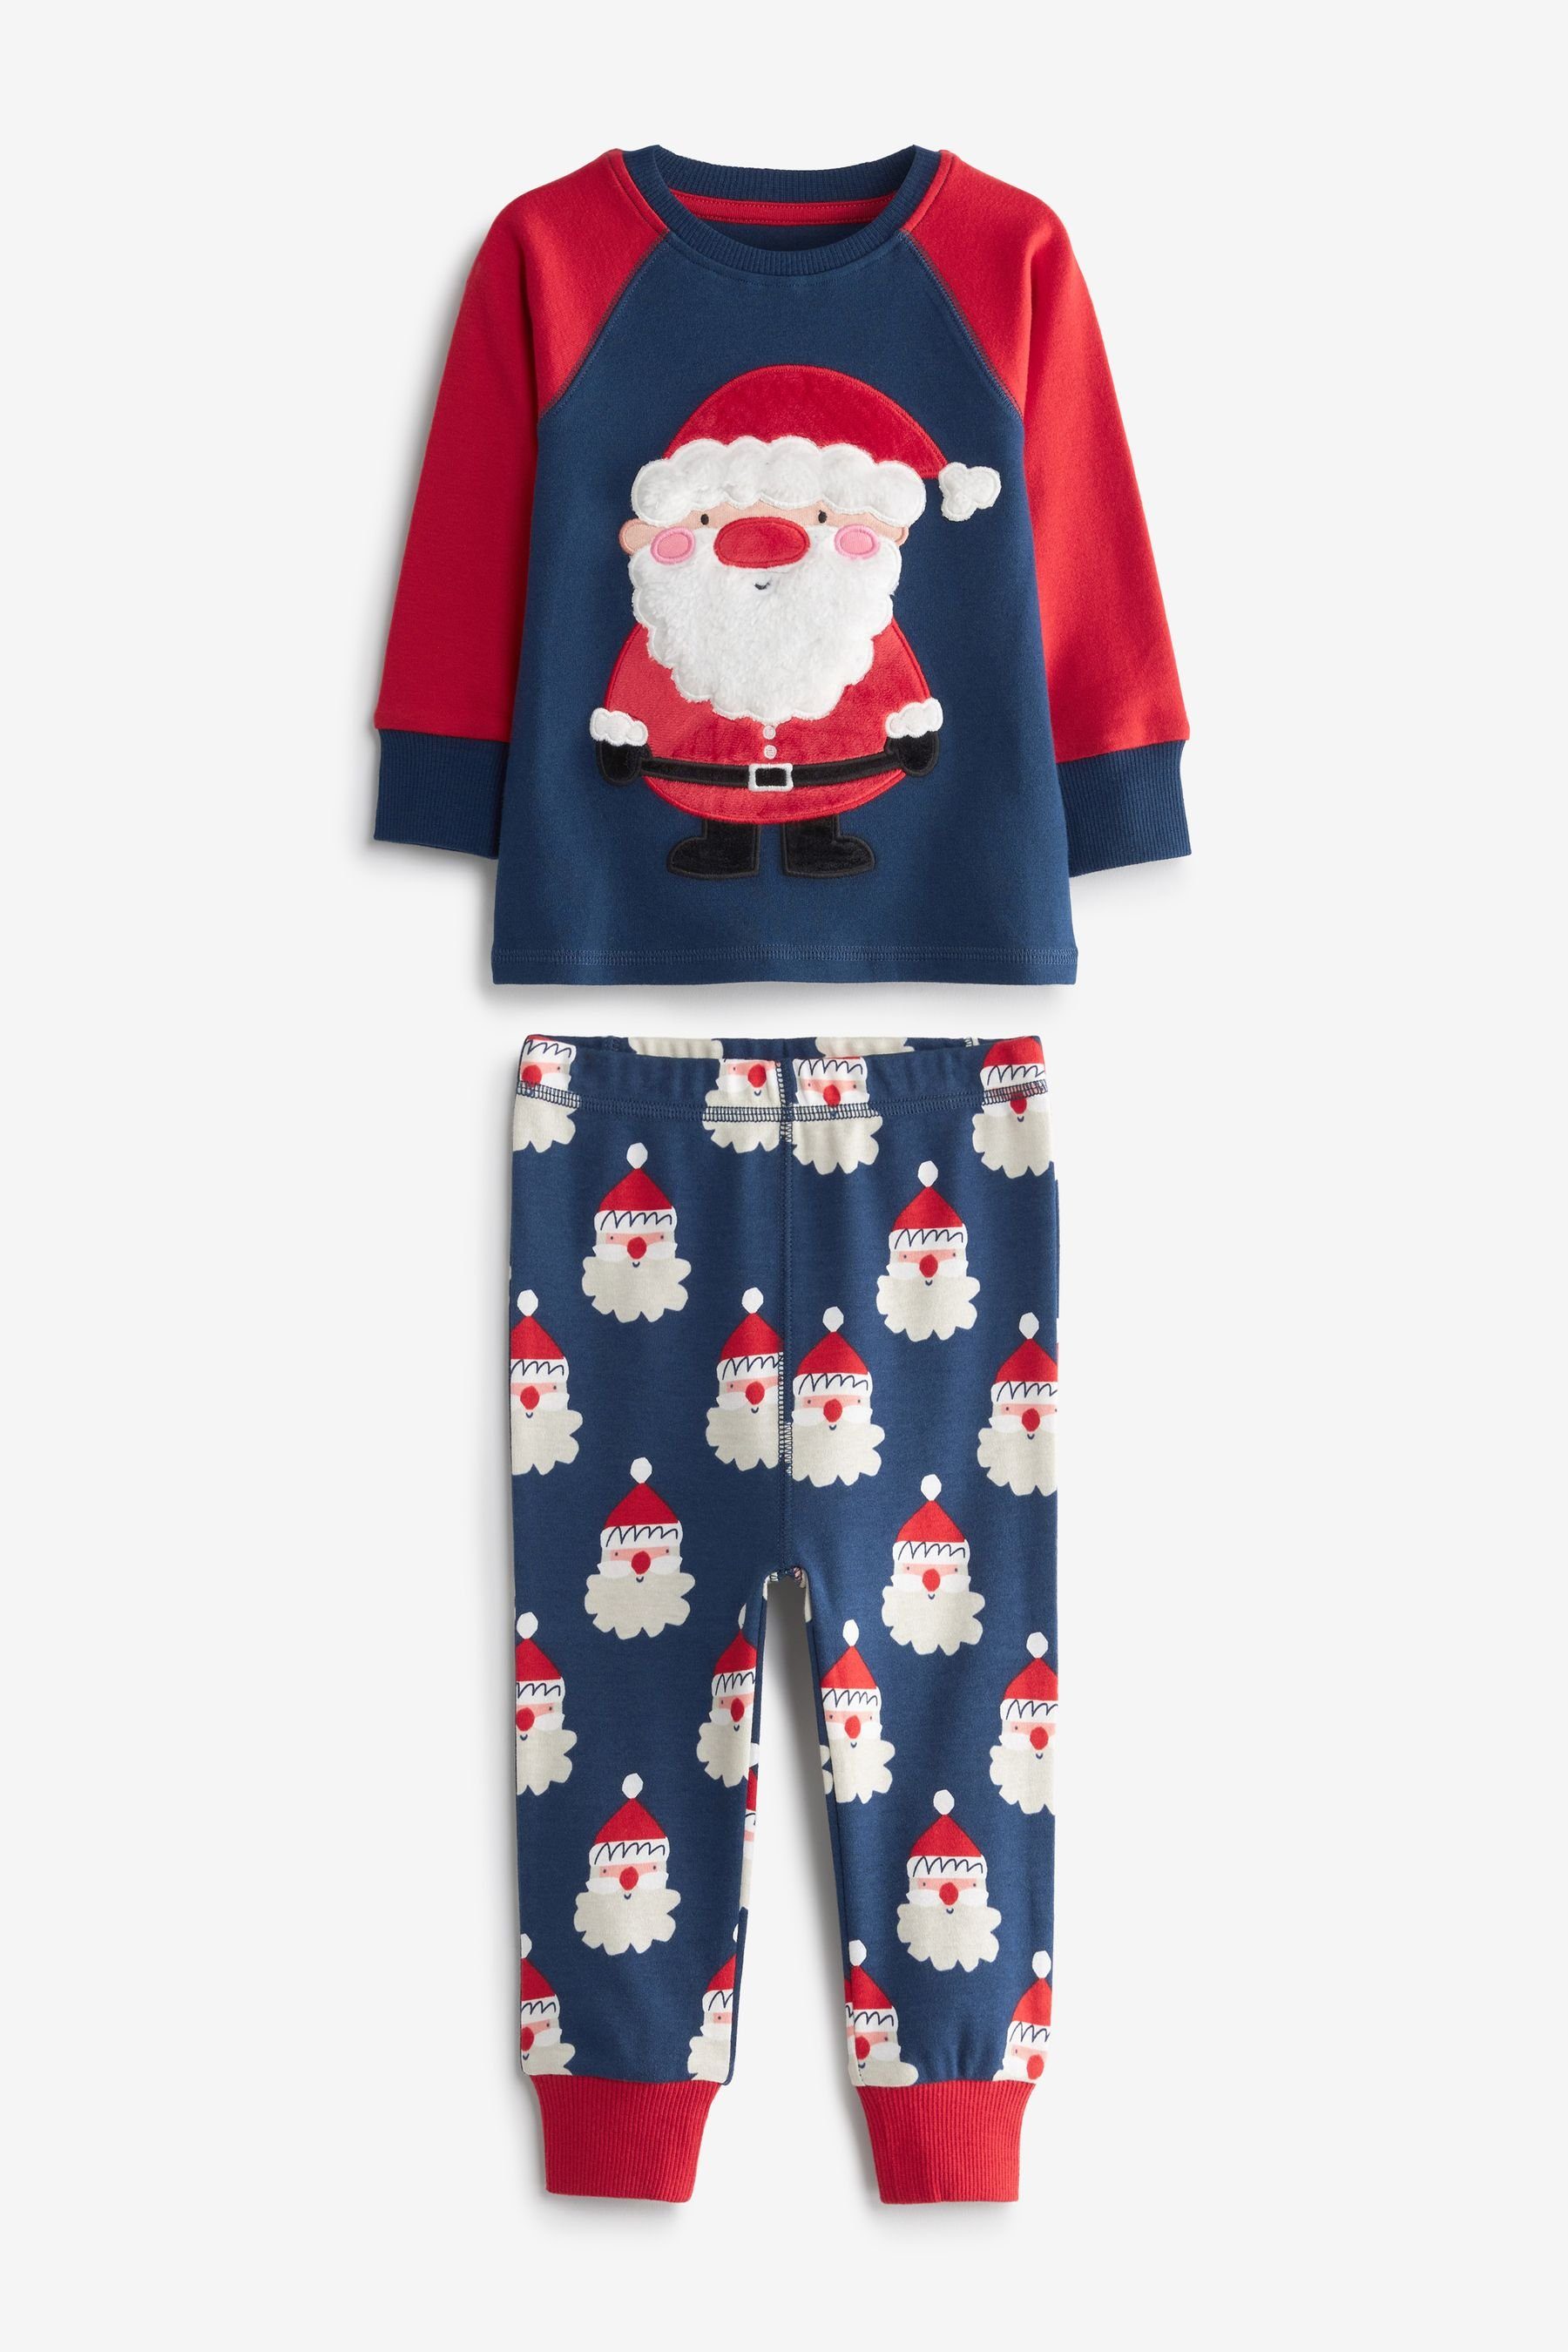 Next Schlafanzug Pyjama Weihnachtlicher Navy (2 tlg) Blue Santa